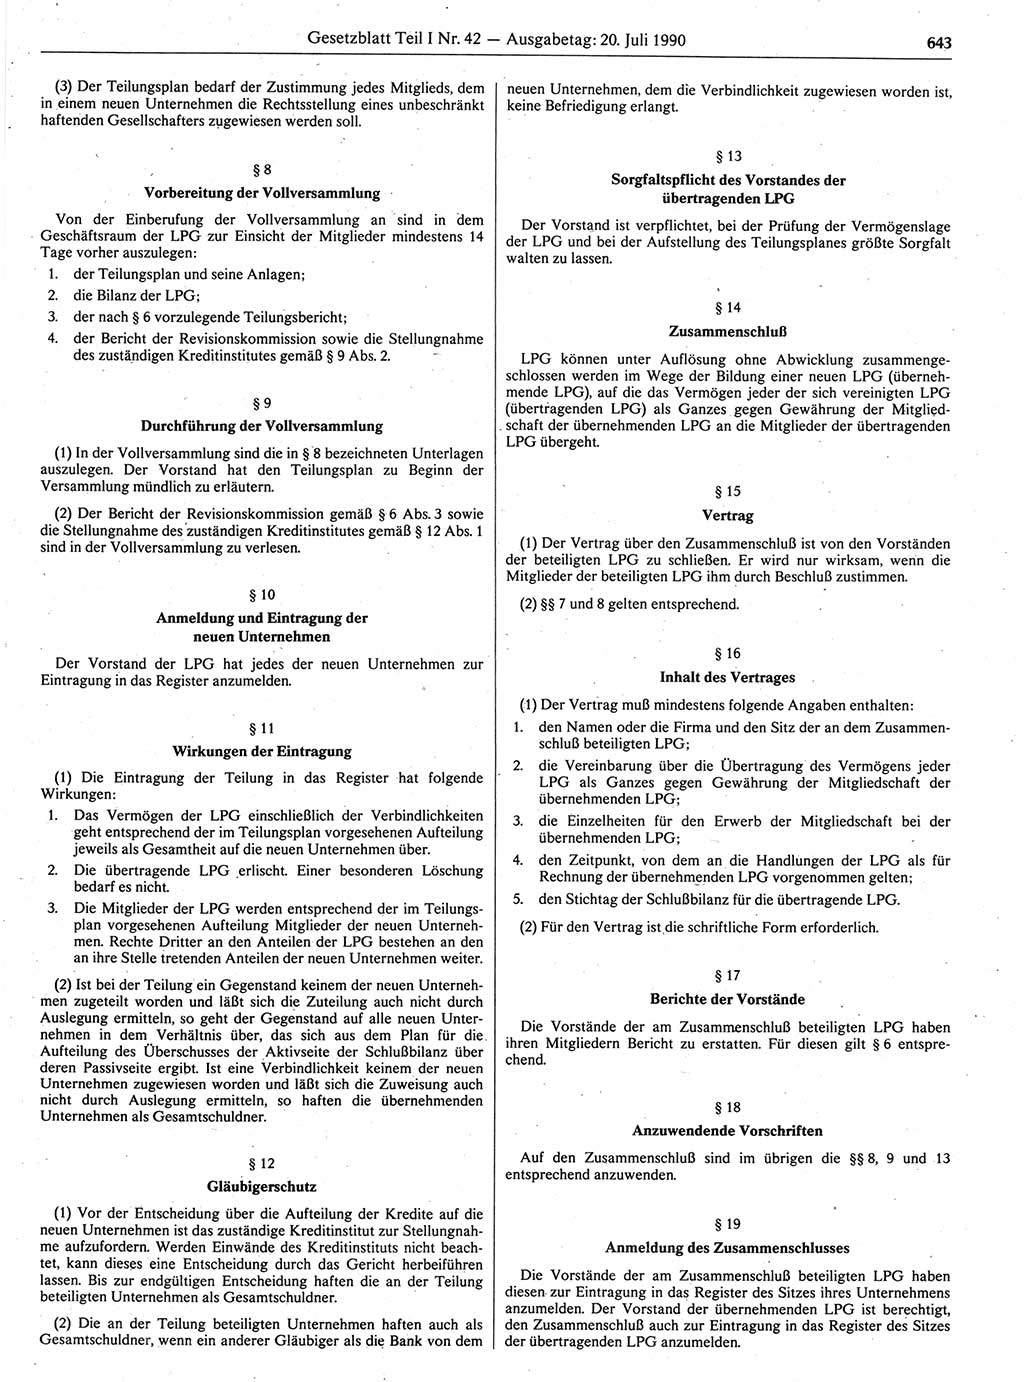 Gesetzblatt (GBl.) der Deutschen Demokratischen Republik (DDR) Teil Ⅰ 1990, Seite 643 (GBl. DDR Ⅰ 1990, S. 643)